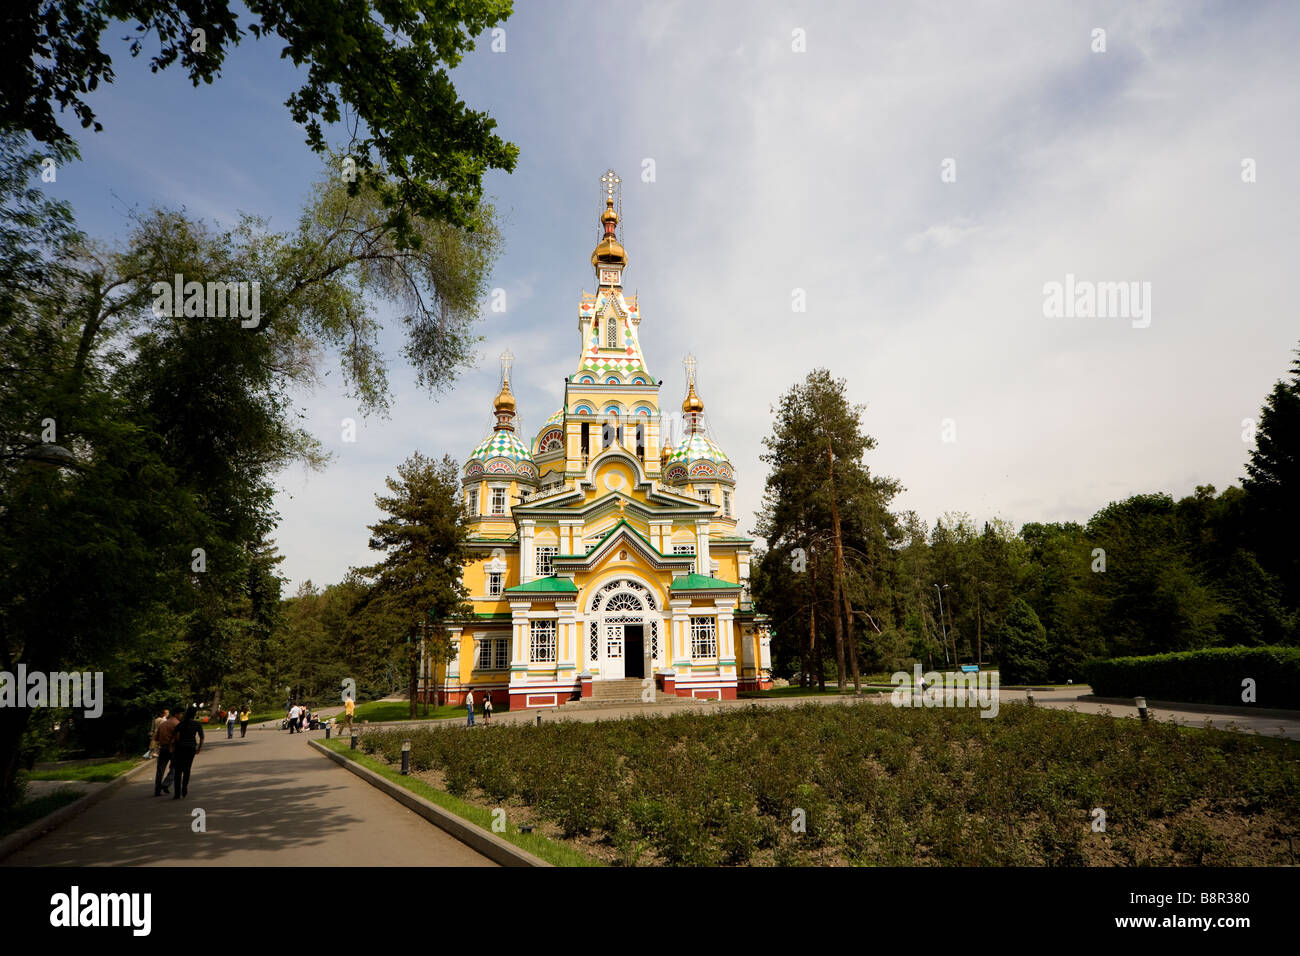 Russisch-orthodoxe Himmelfahrt Kathedrale oder Zenkov Kathedrale gebaut von Holz ohne Nägel in Panfilov Park, Almaty, Kasachstan. Stockfoto